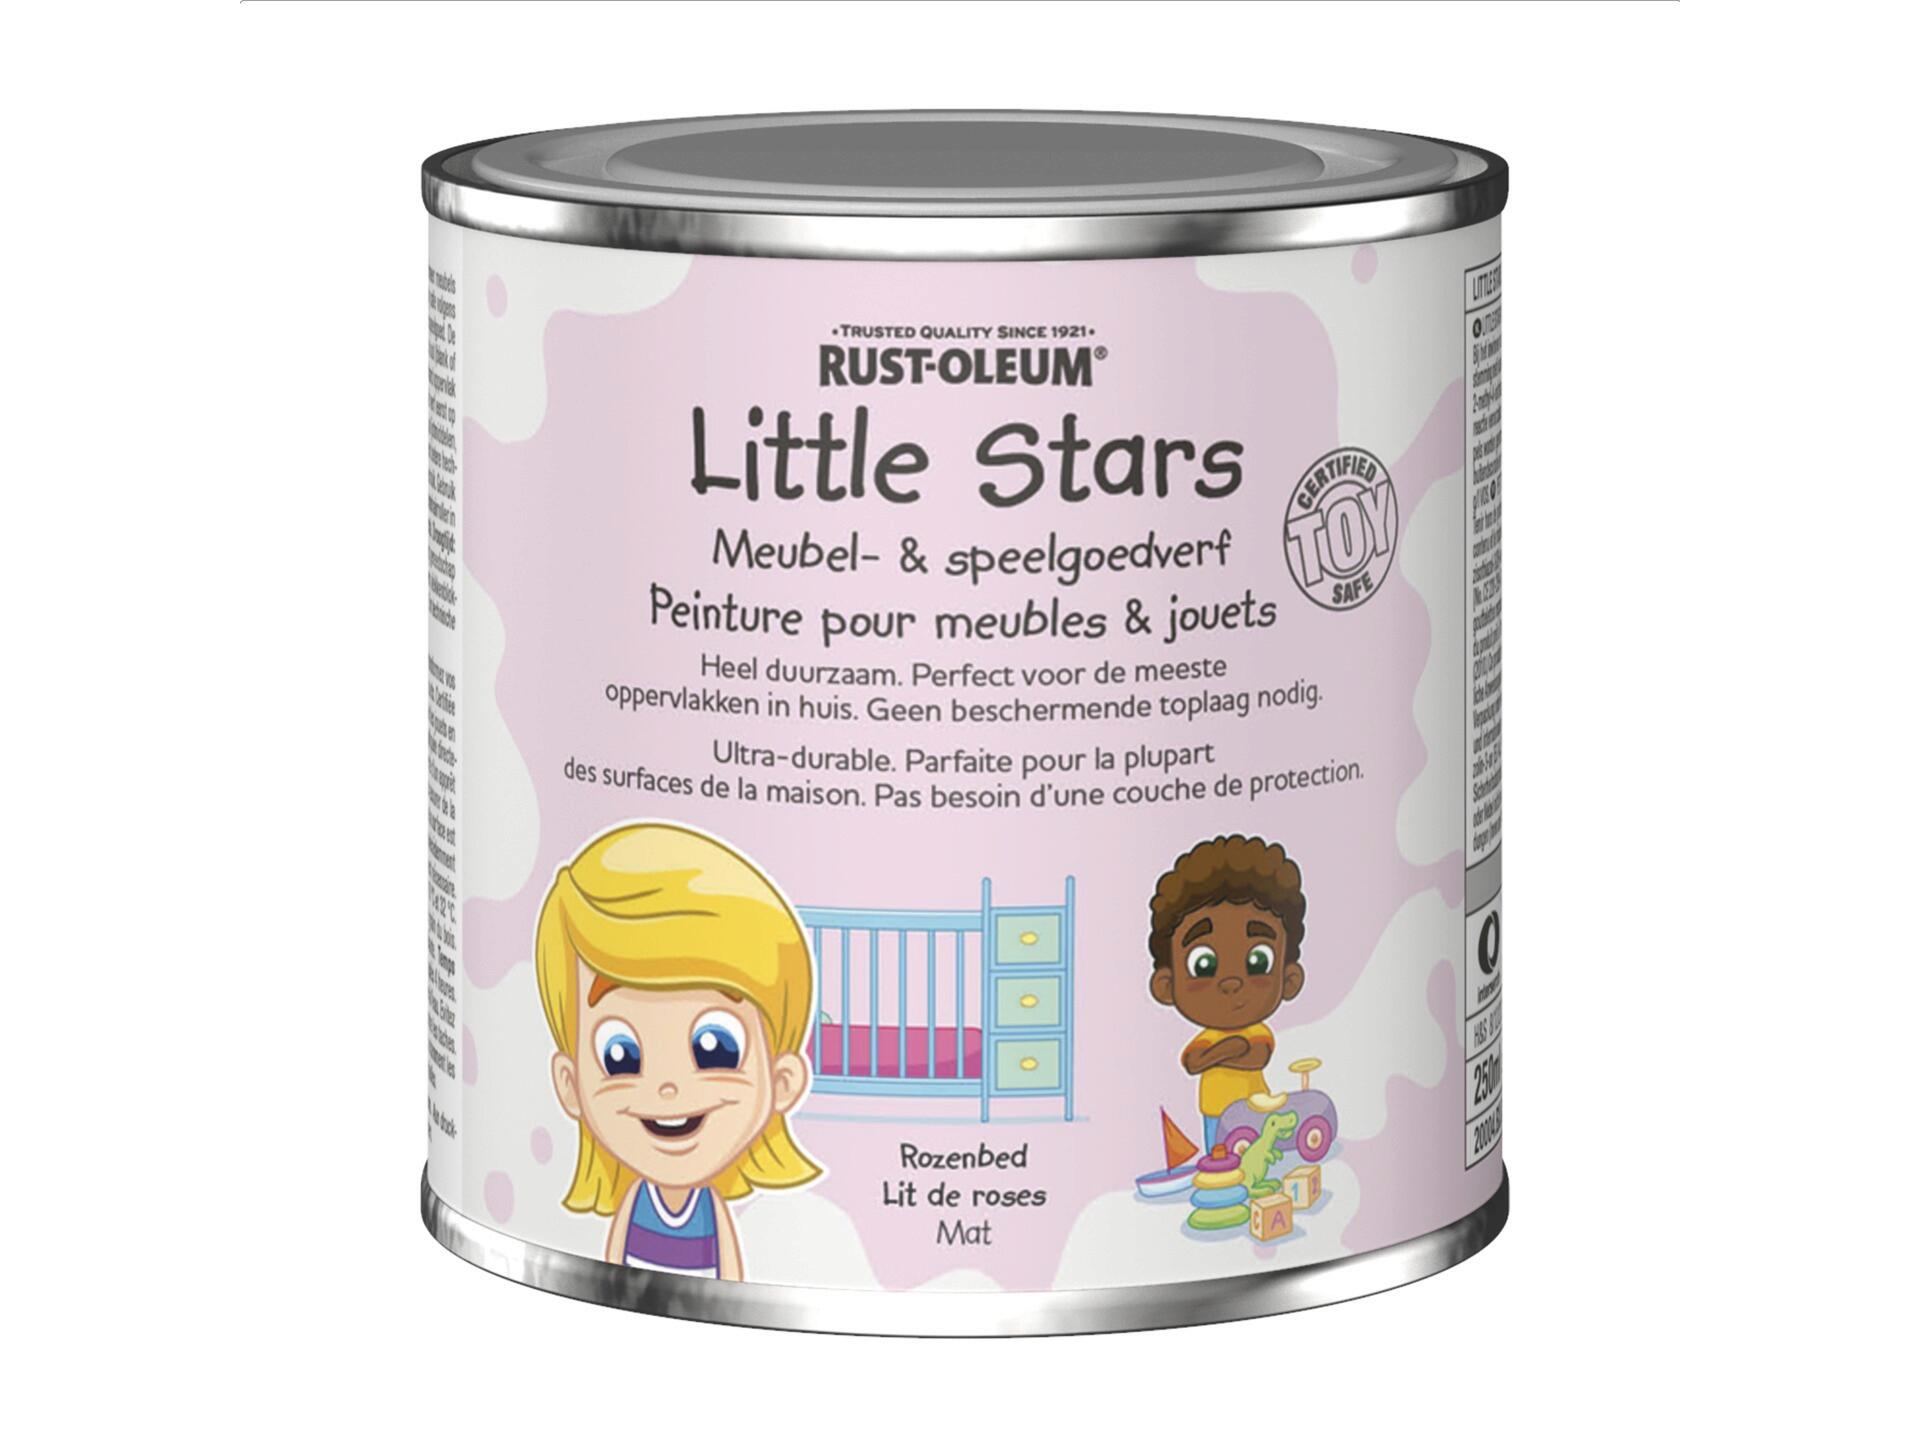 Rust-oleum Little Stars peinture pour meubles et jouets 250ml lit de roses